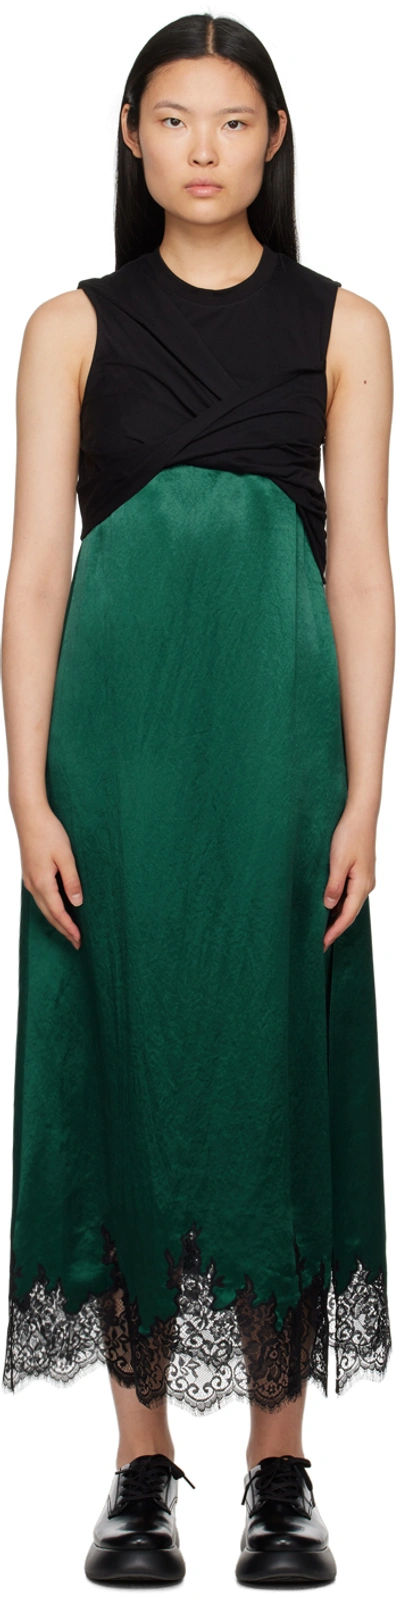 3.1 Phillip Lim Twist Tank Slip Dress - Black/Emerald